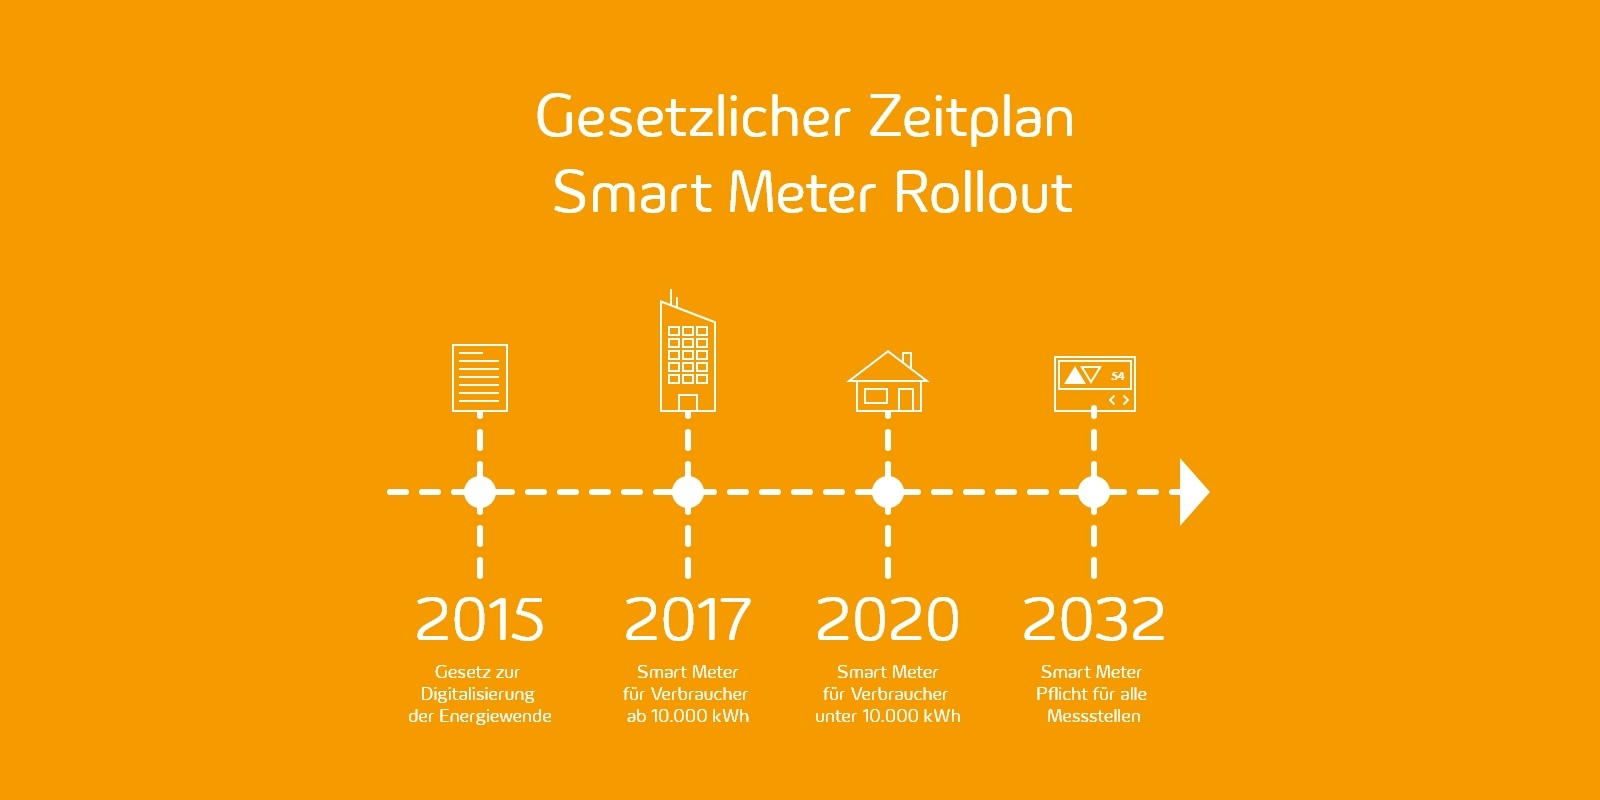 Die Grafik zeigt einen Zeitstrahl des Smart Meter Rollouts von 2015 bis 2032. Zu sehen ist der Beginn des Digitalisierungsgesetzes bis zur Smart Meter Pflicht für alle Messstellen. 